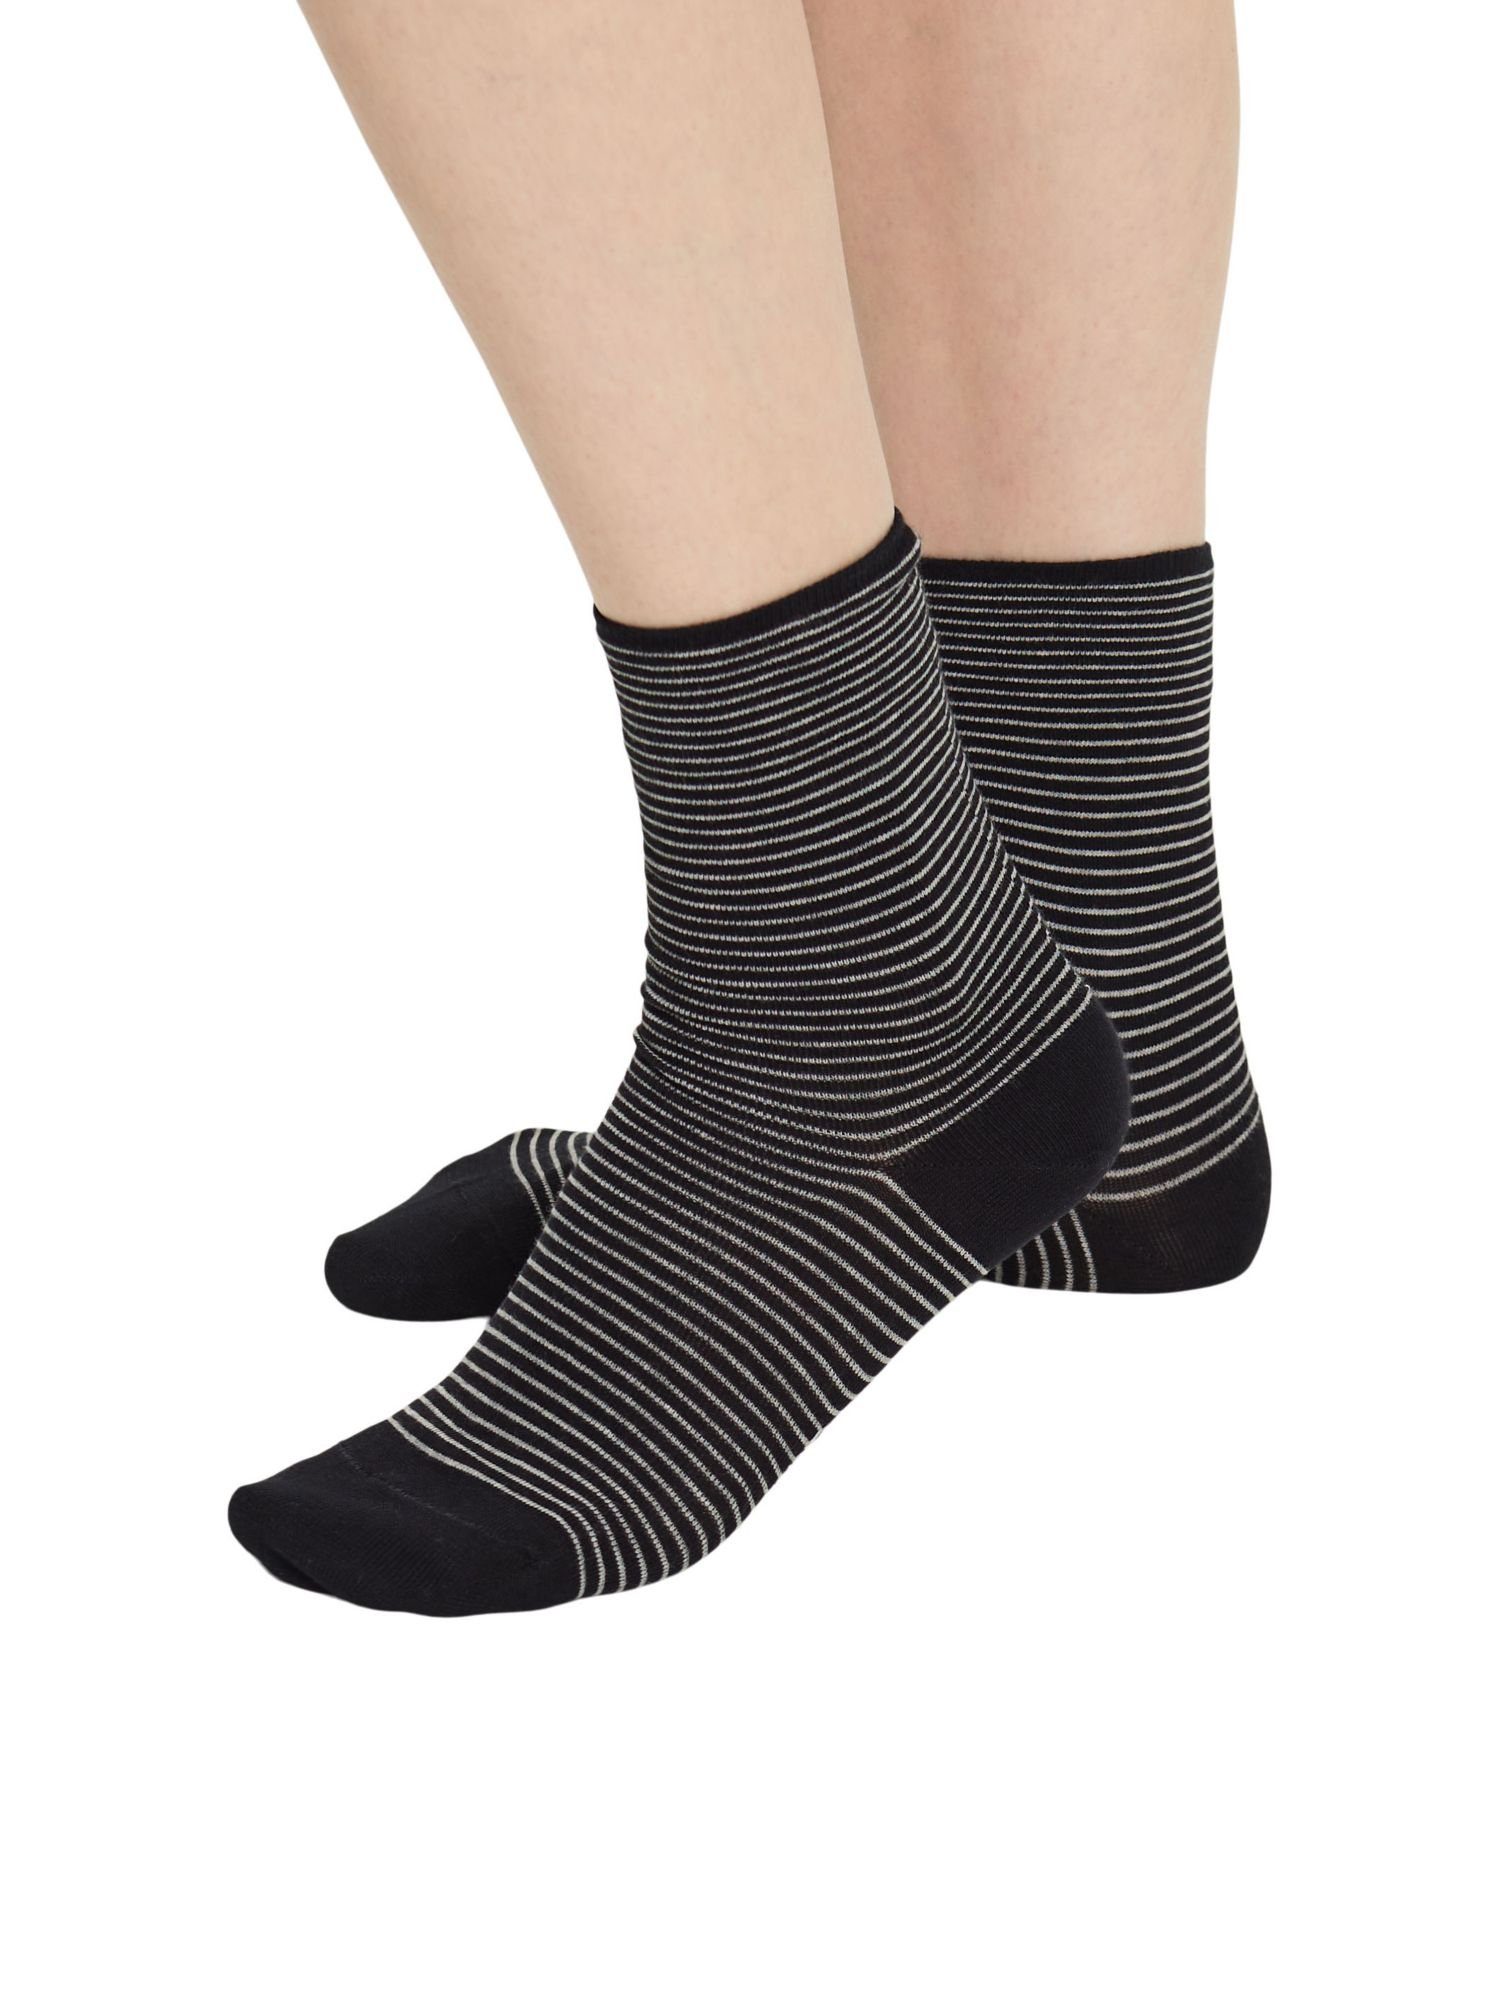 Esprit Socken 5er-Set gemusterte Socken BLACK